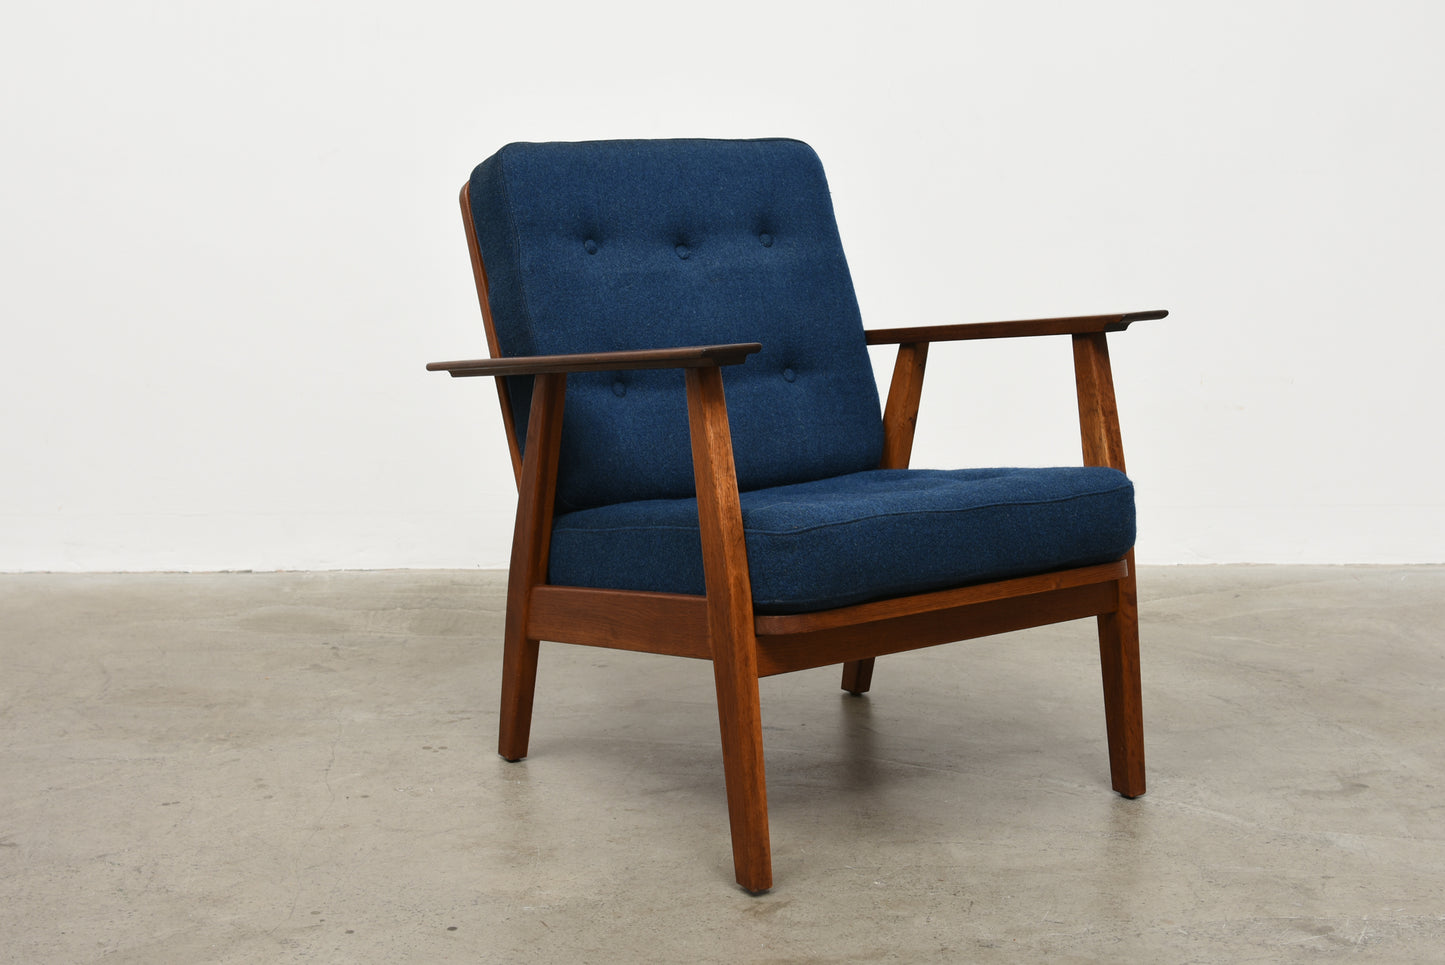 1950 teak + oak lounge chair